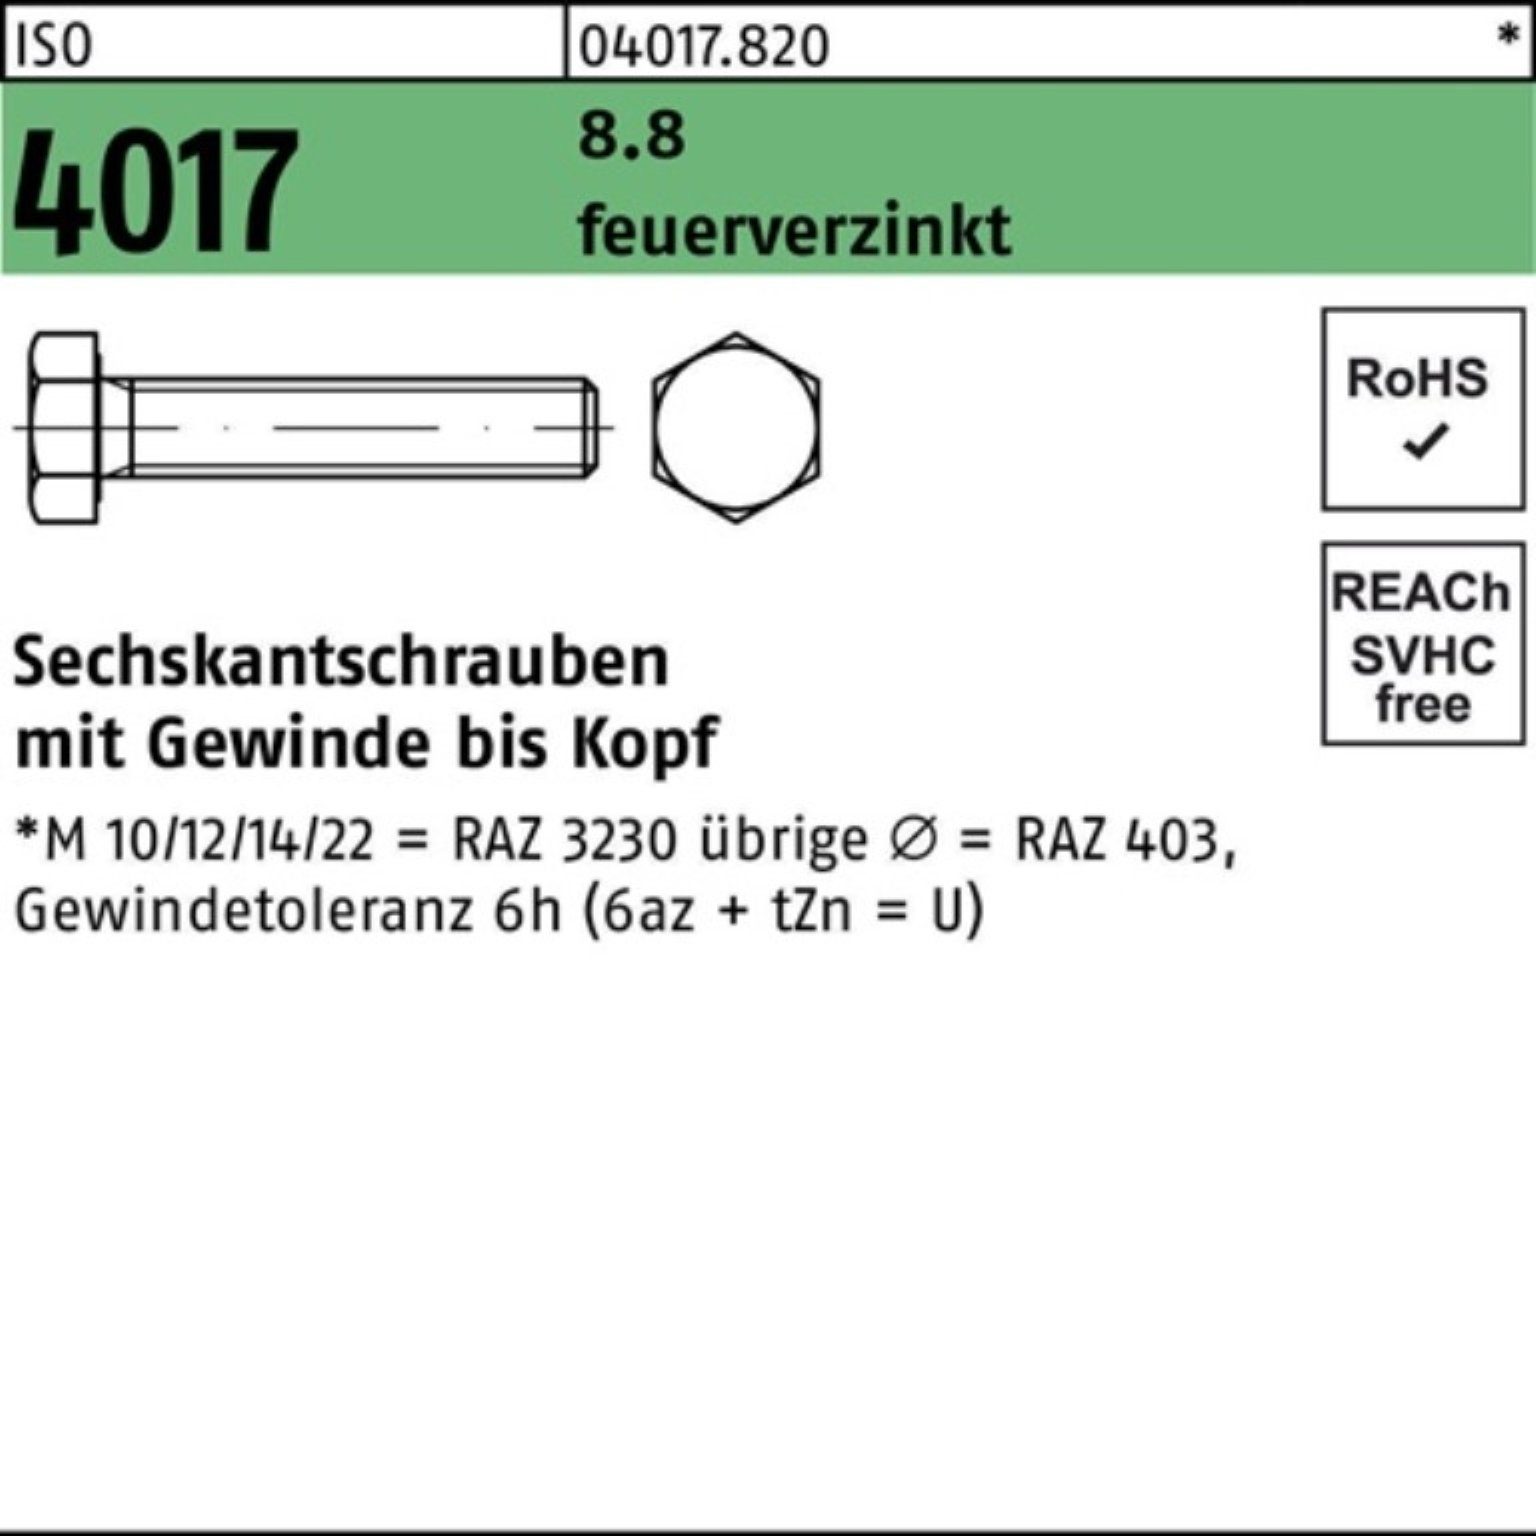 Bufab Sechskantschraube 100er Pack Sechskantschraube ISO 4017 VG M12x 25 8.8 feuerverz. 100 St